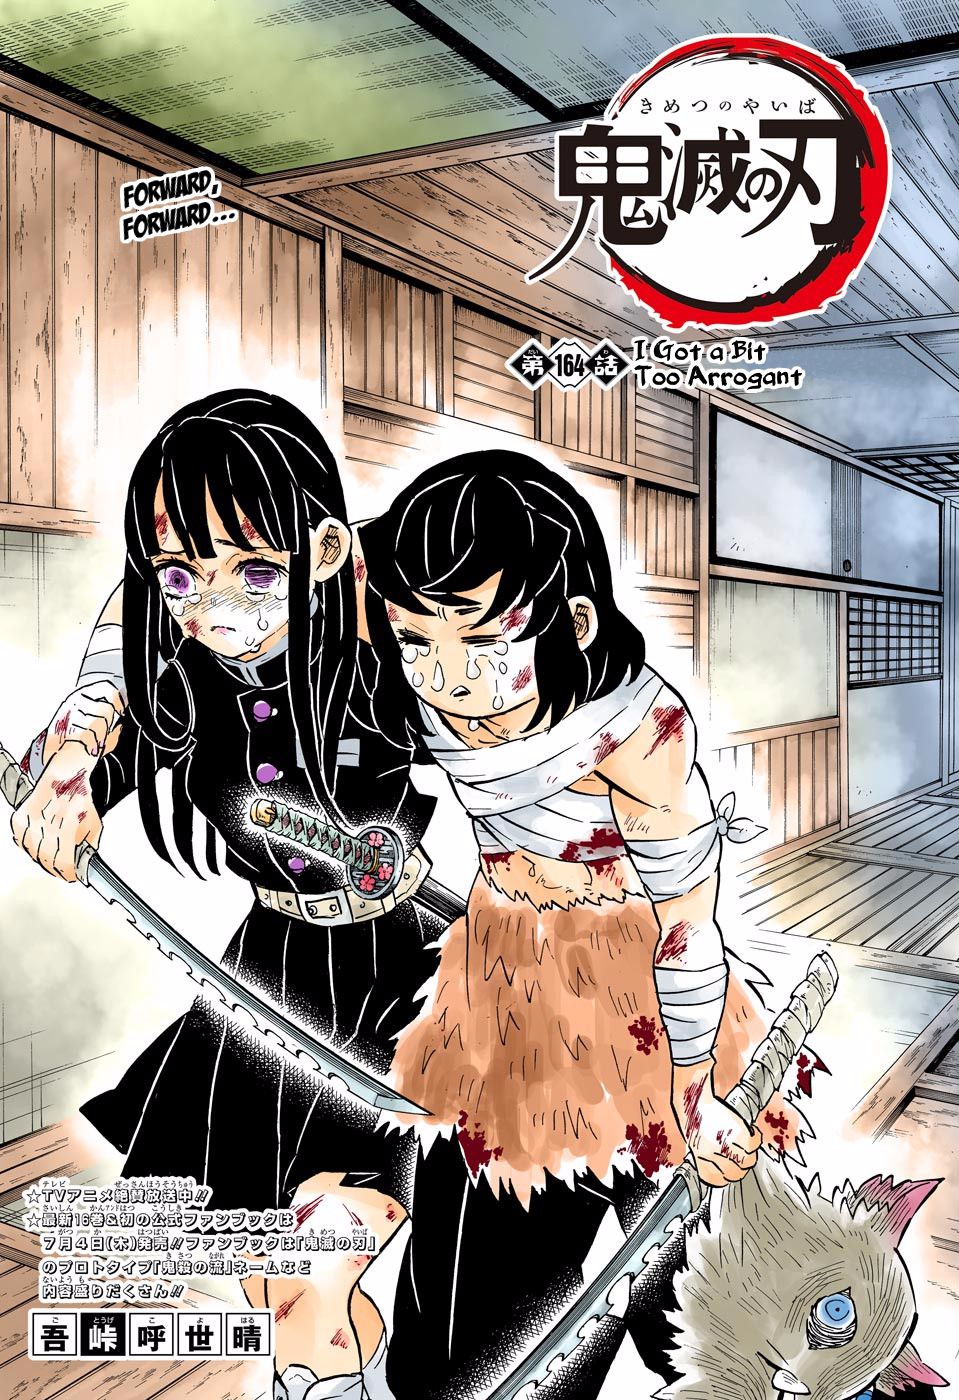 Demon Slayer: Kimetsu no Yaiba Manga Page, Demon Slayer: Kimetsu no Yaiba